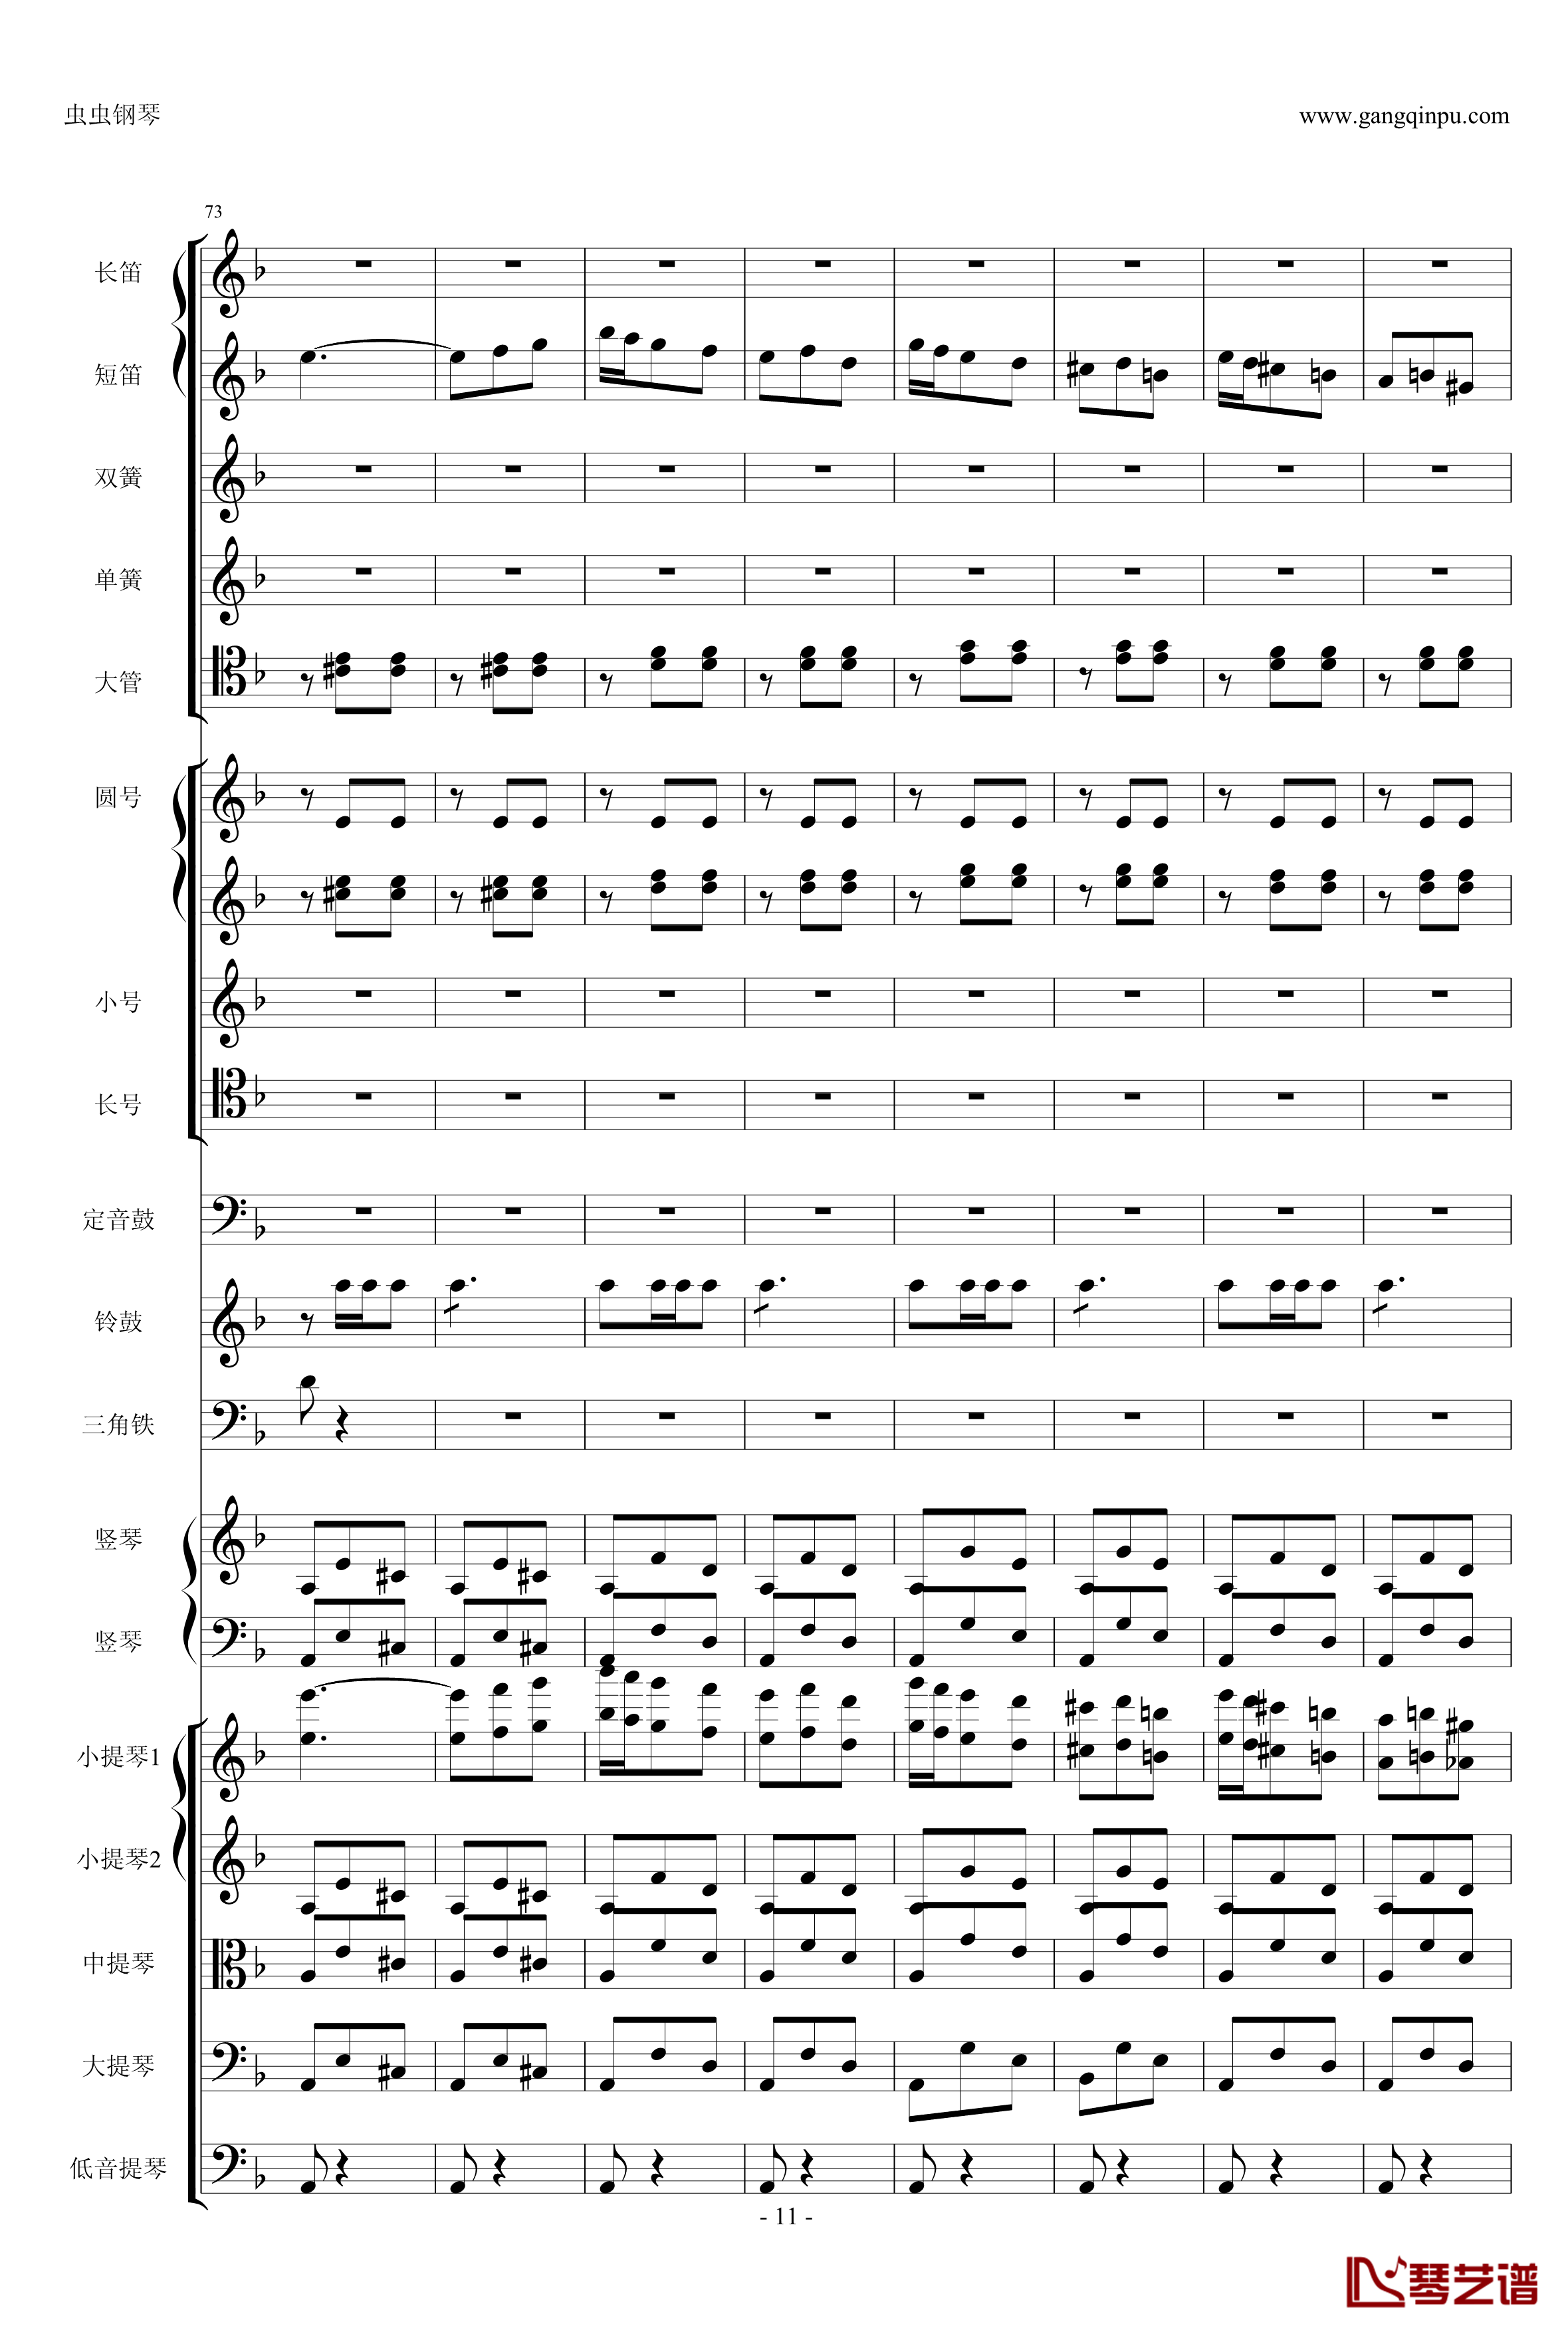 歌剧卡门选段钢琴谱-比才-Bizet- 第四幕间奏曲11